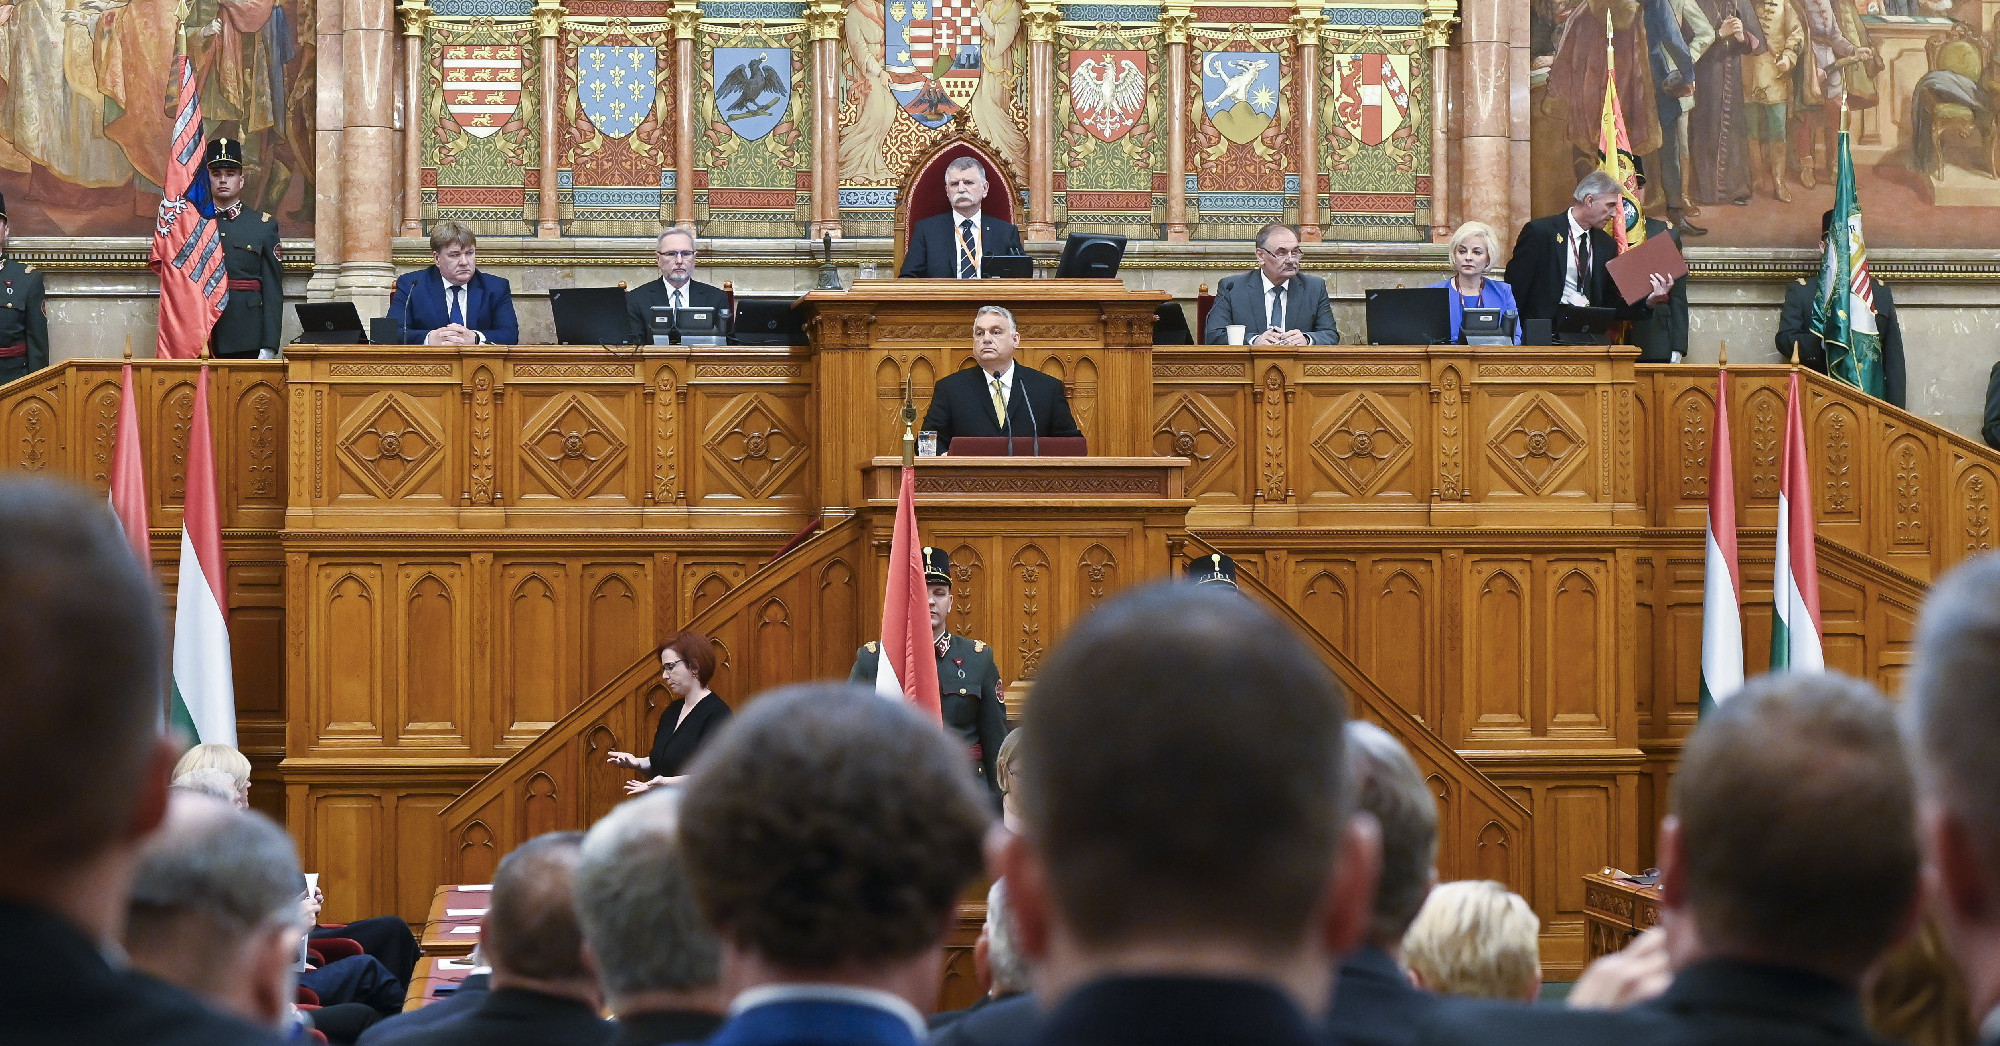 Orbán: "Mit keresünk az EU-ban? Az álmainkat, a szabad nemzetek közösségét"